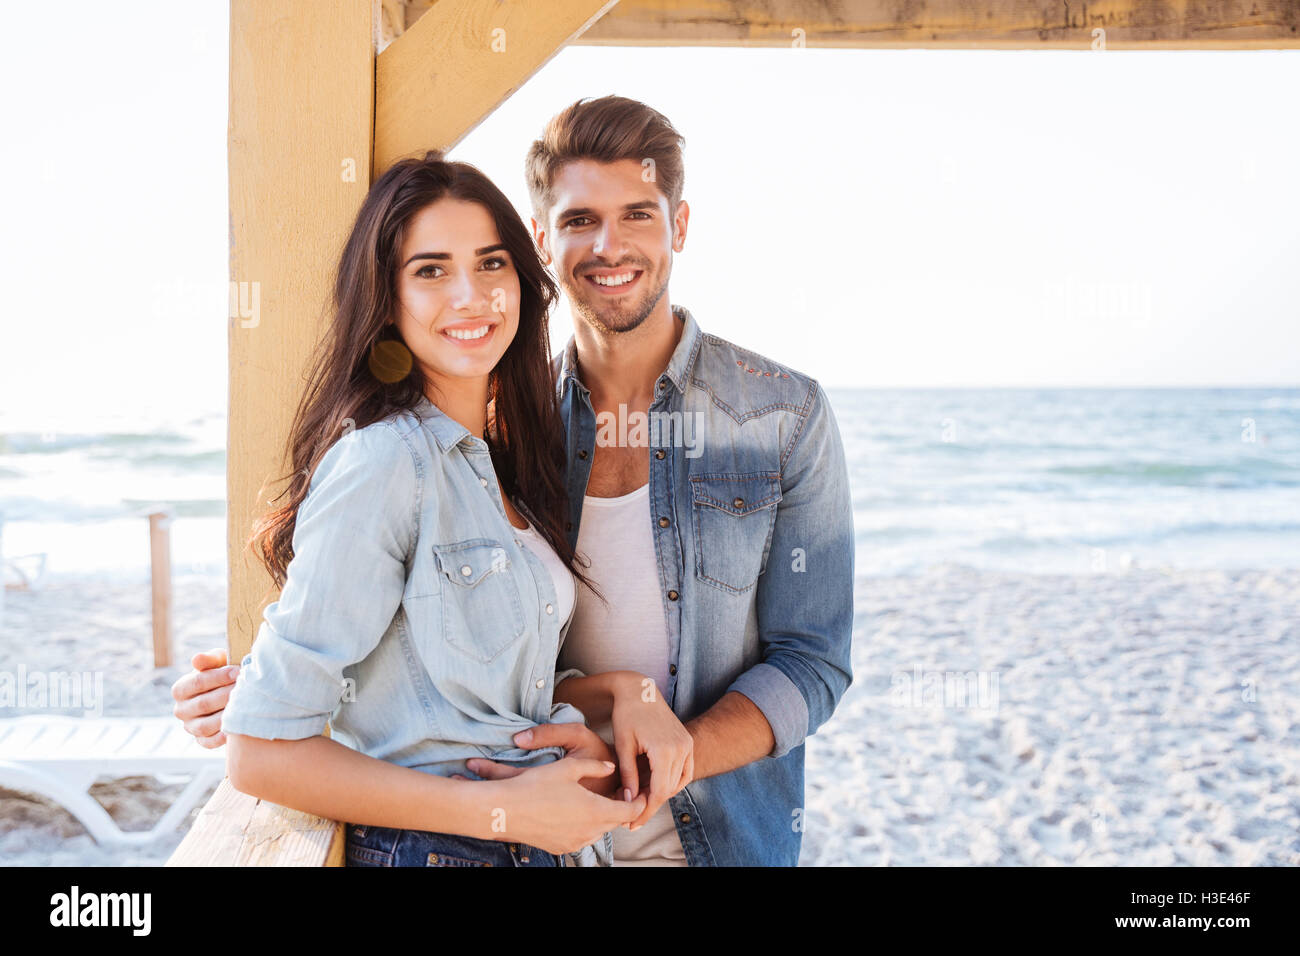 Young smiling couple amoureux se tenant ensemble à la plage Banque D'Images